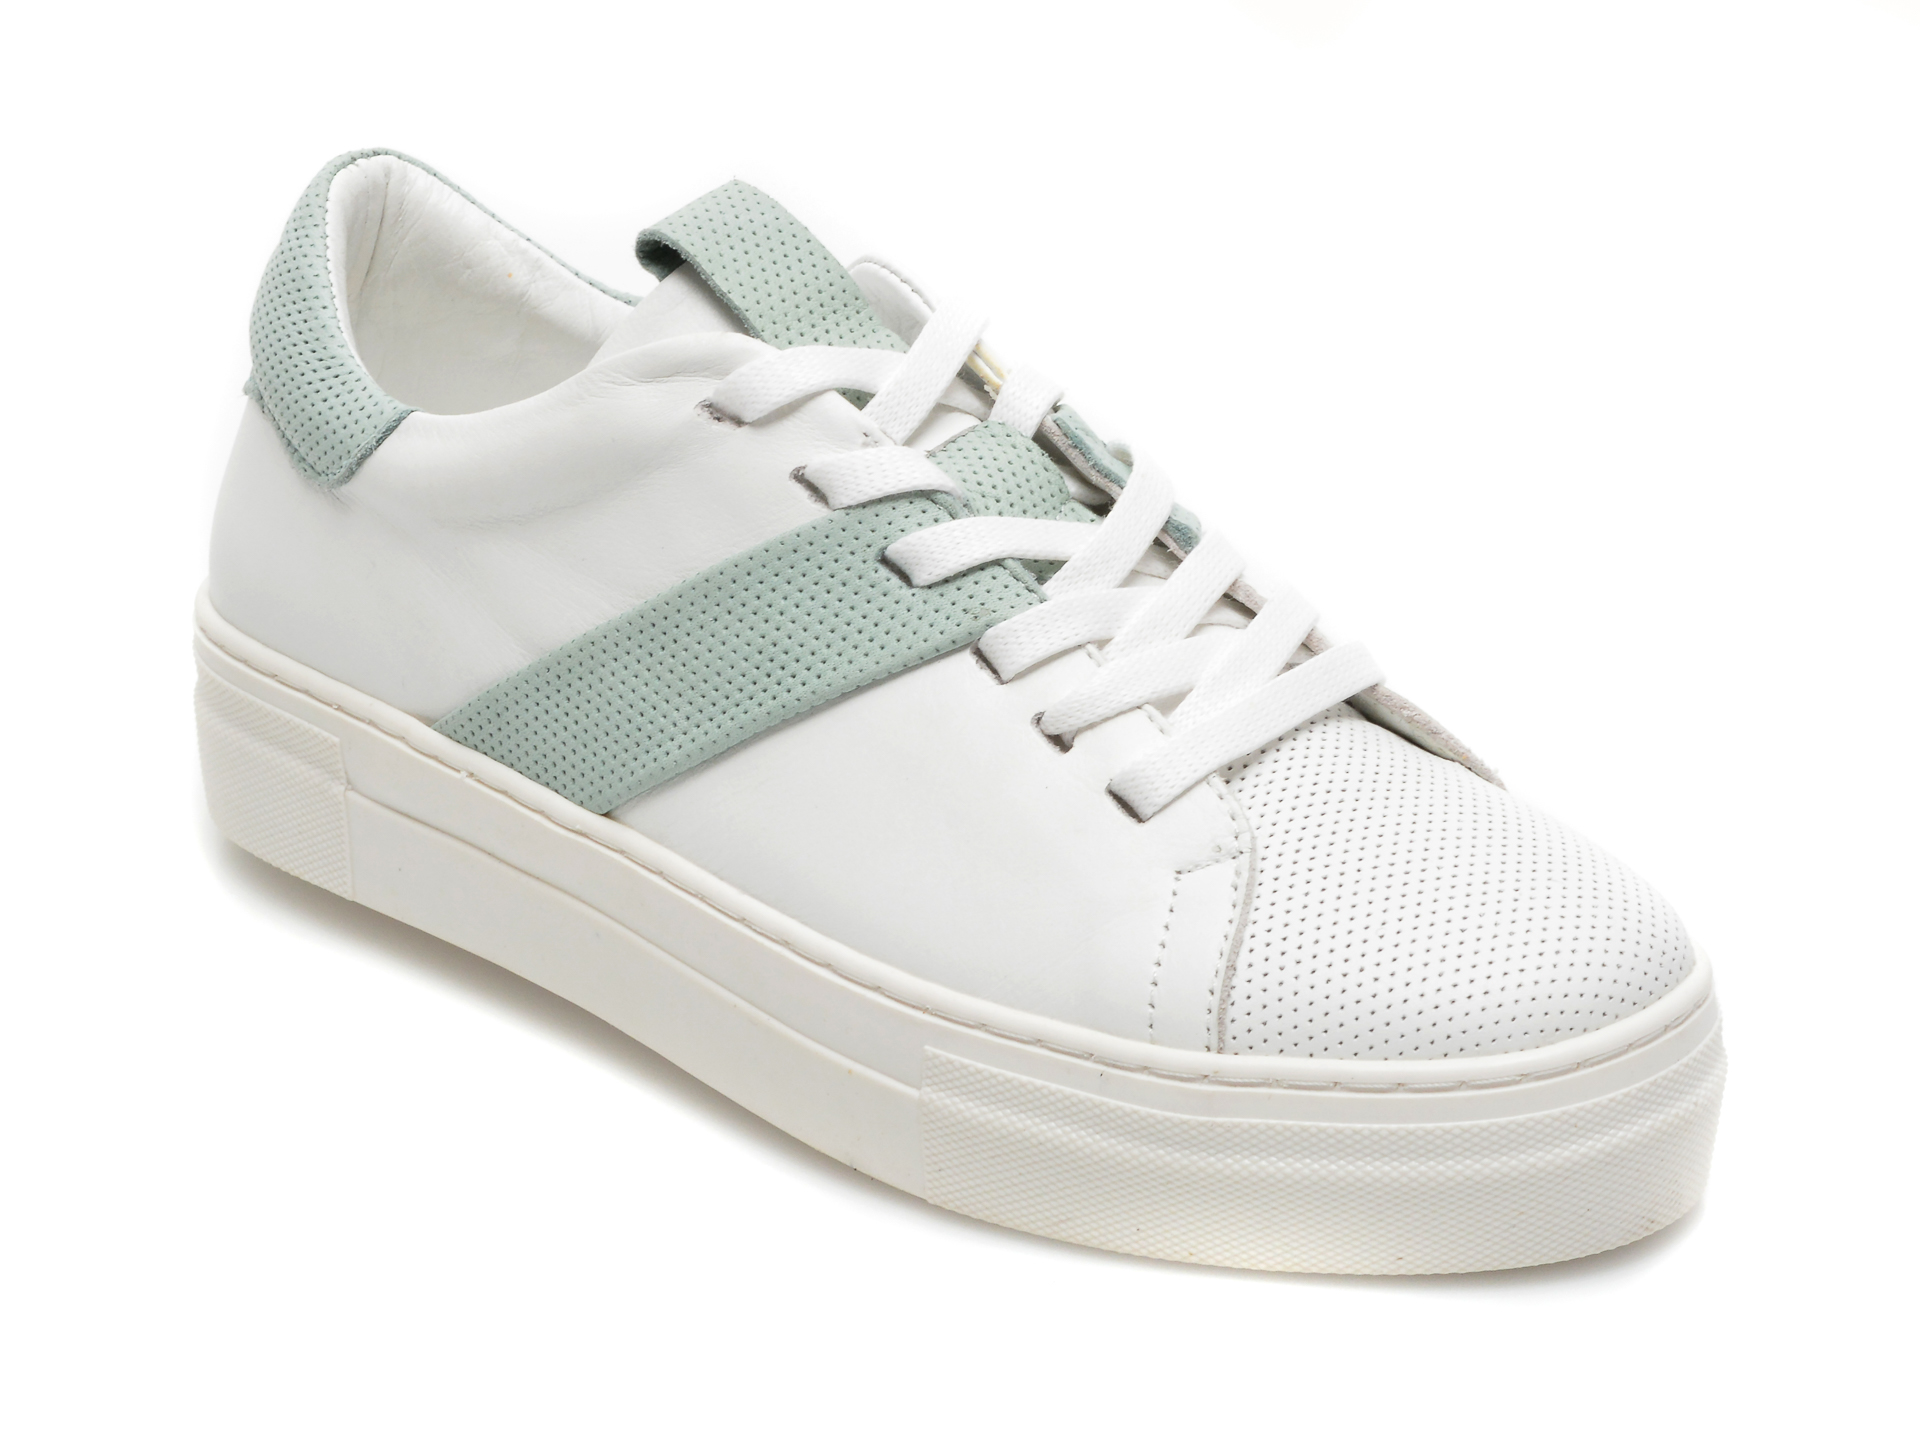 Pantofi FLAVIA PASSINI albi, 2078, din piele naturala Flavia Passini